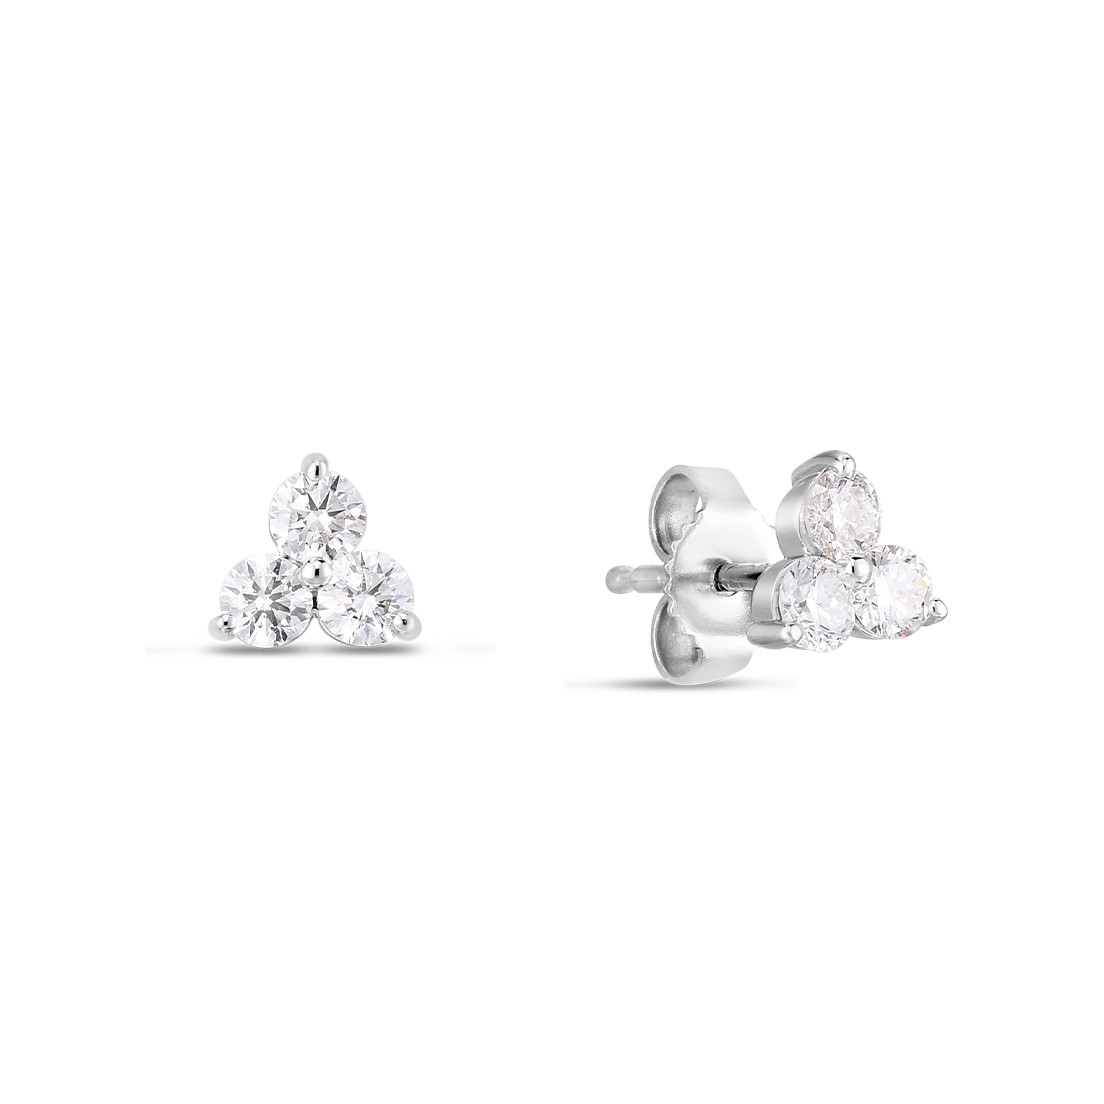 Roberto Coin 18K White Gold 3 Stone Diamond Cluster Stud Earrings